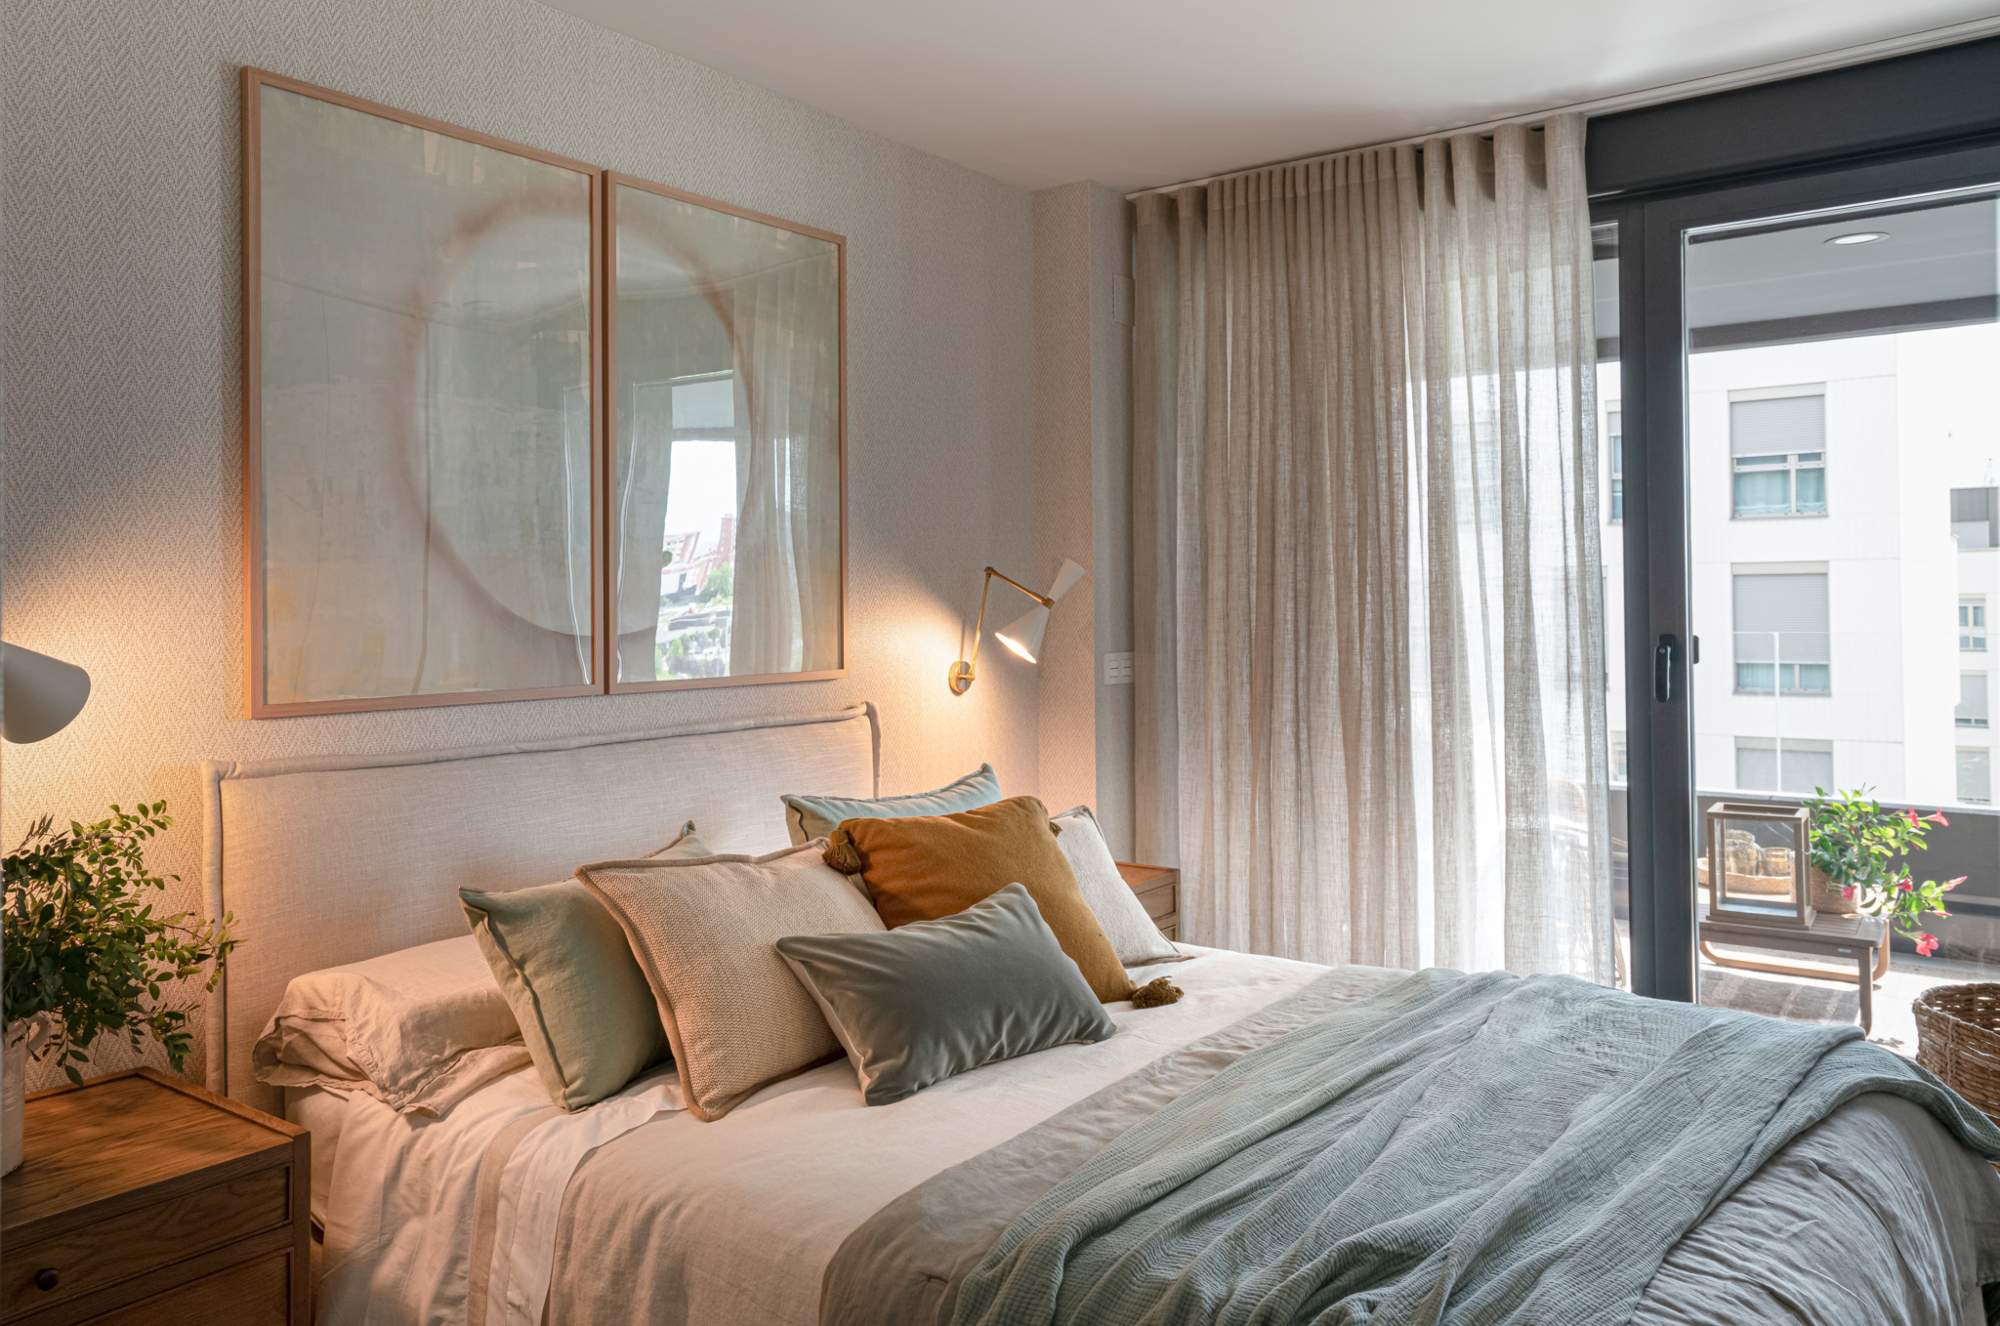 Una habitación en suite en tonos neutros y con mucho confort.